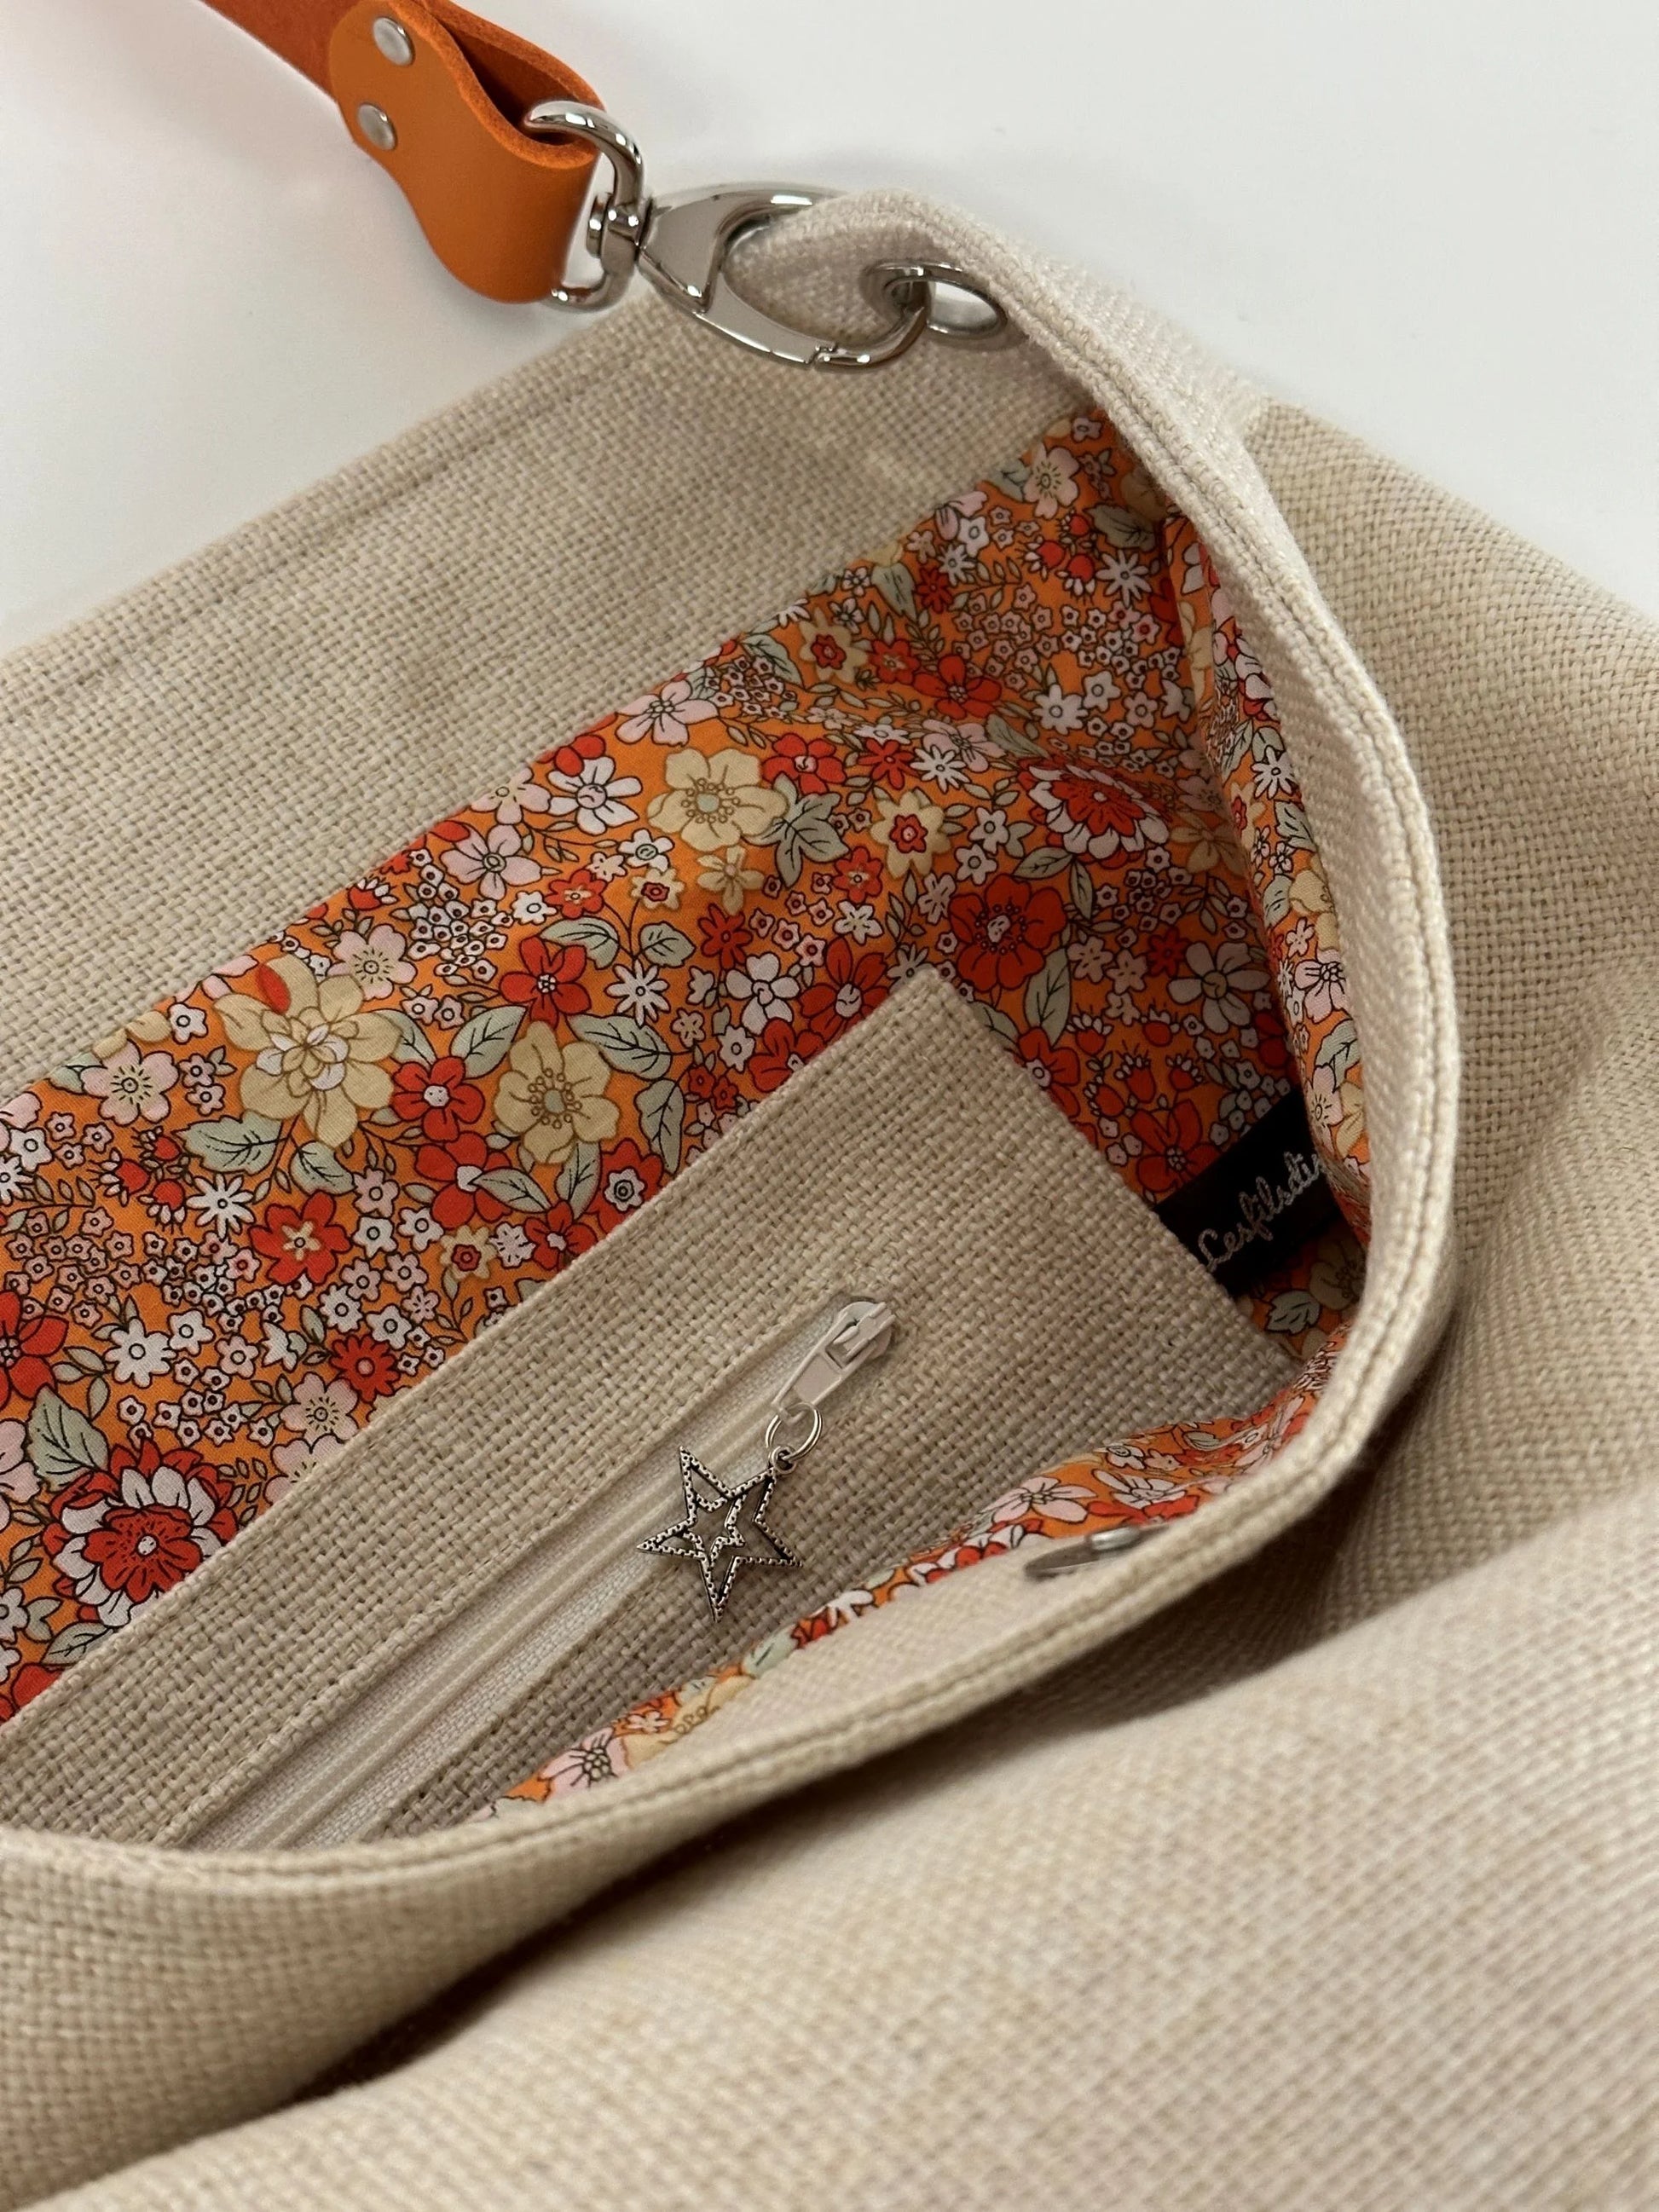 La poche intérieure zippée du sac hobo en lin ivoire et son anse en cuir orange.